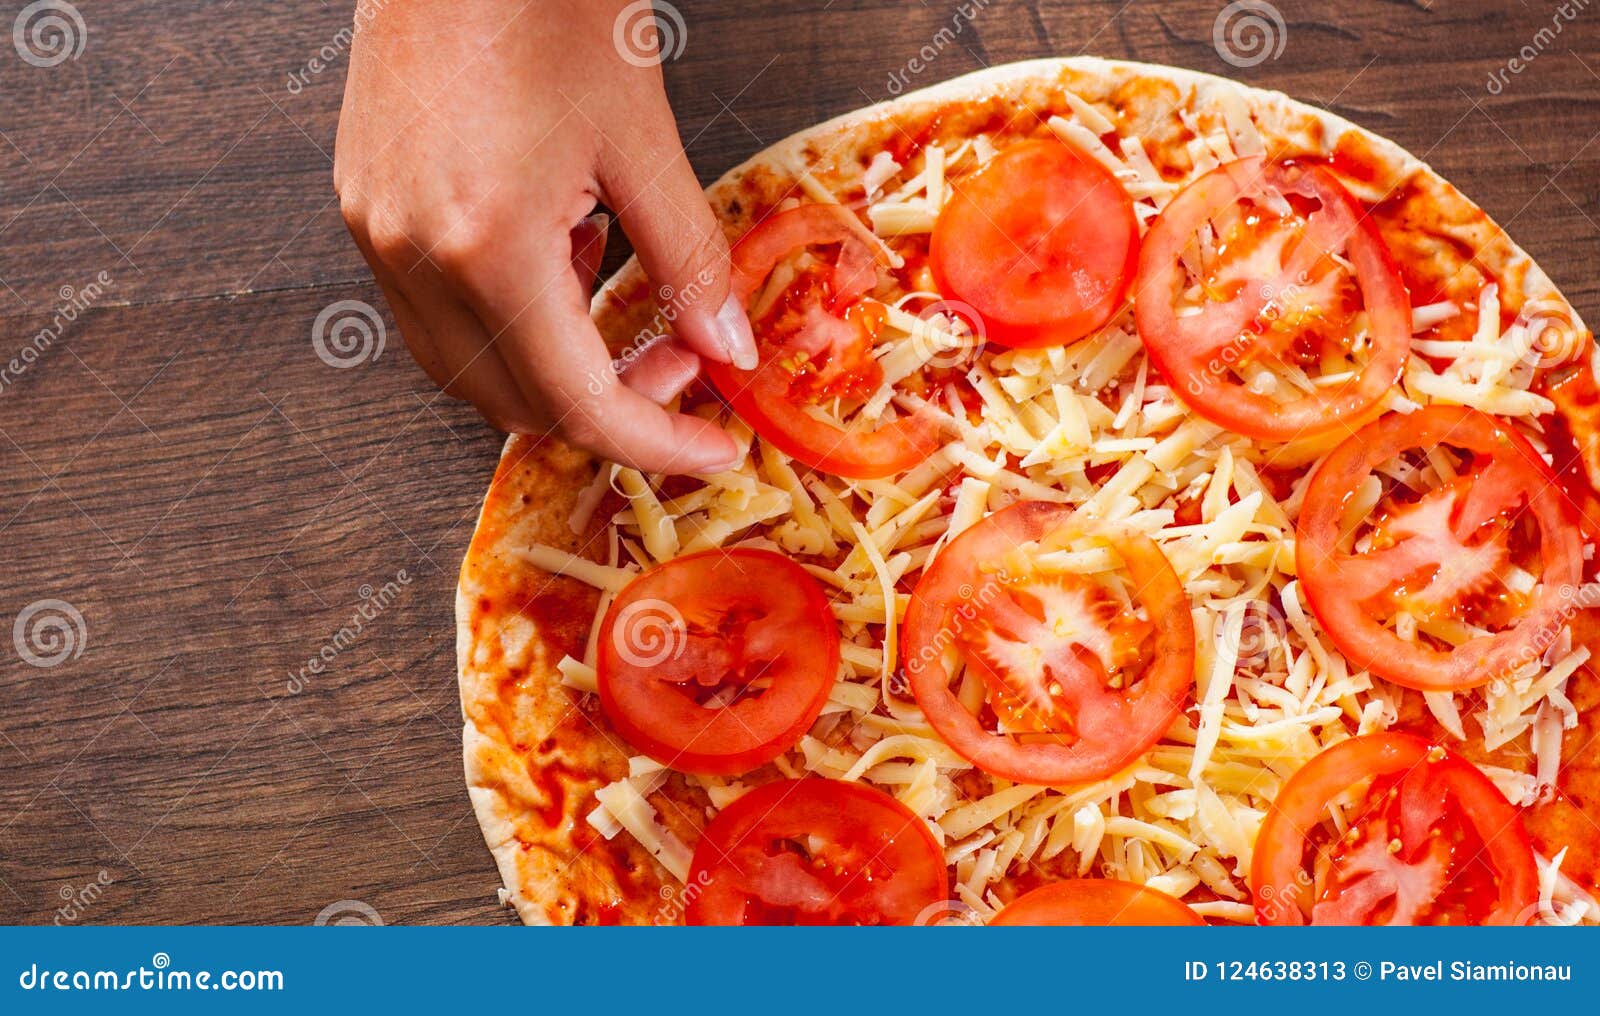 что приготовить пиццу без помидоров фото 45